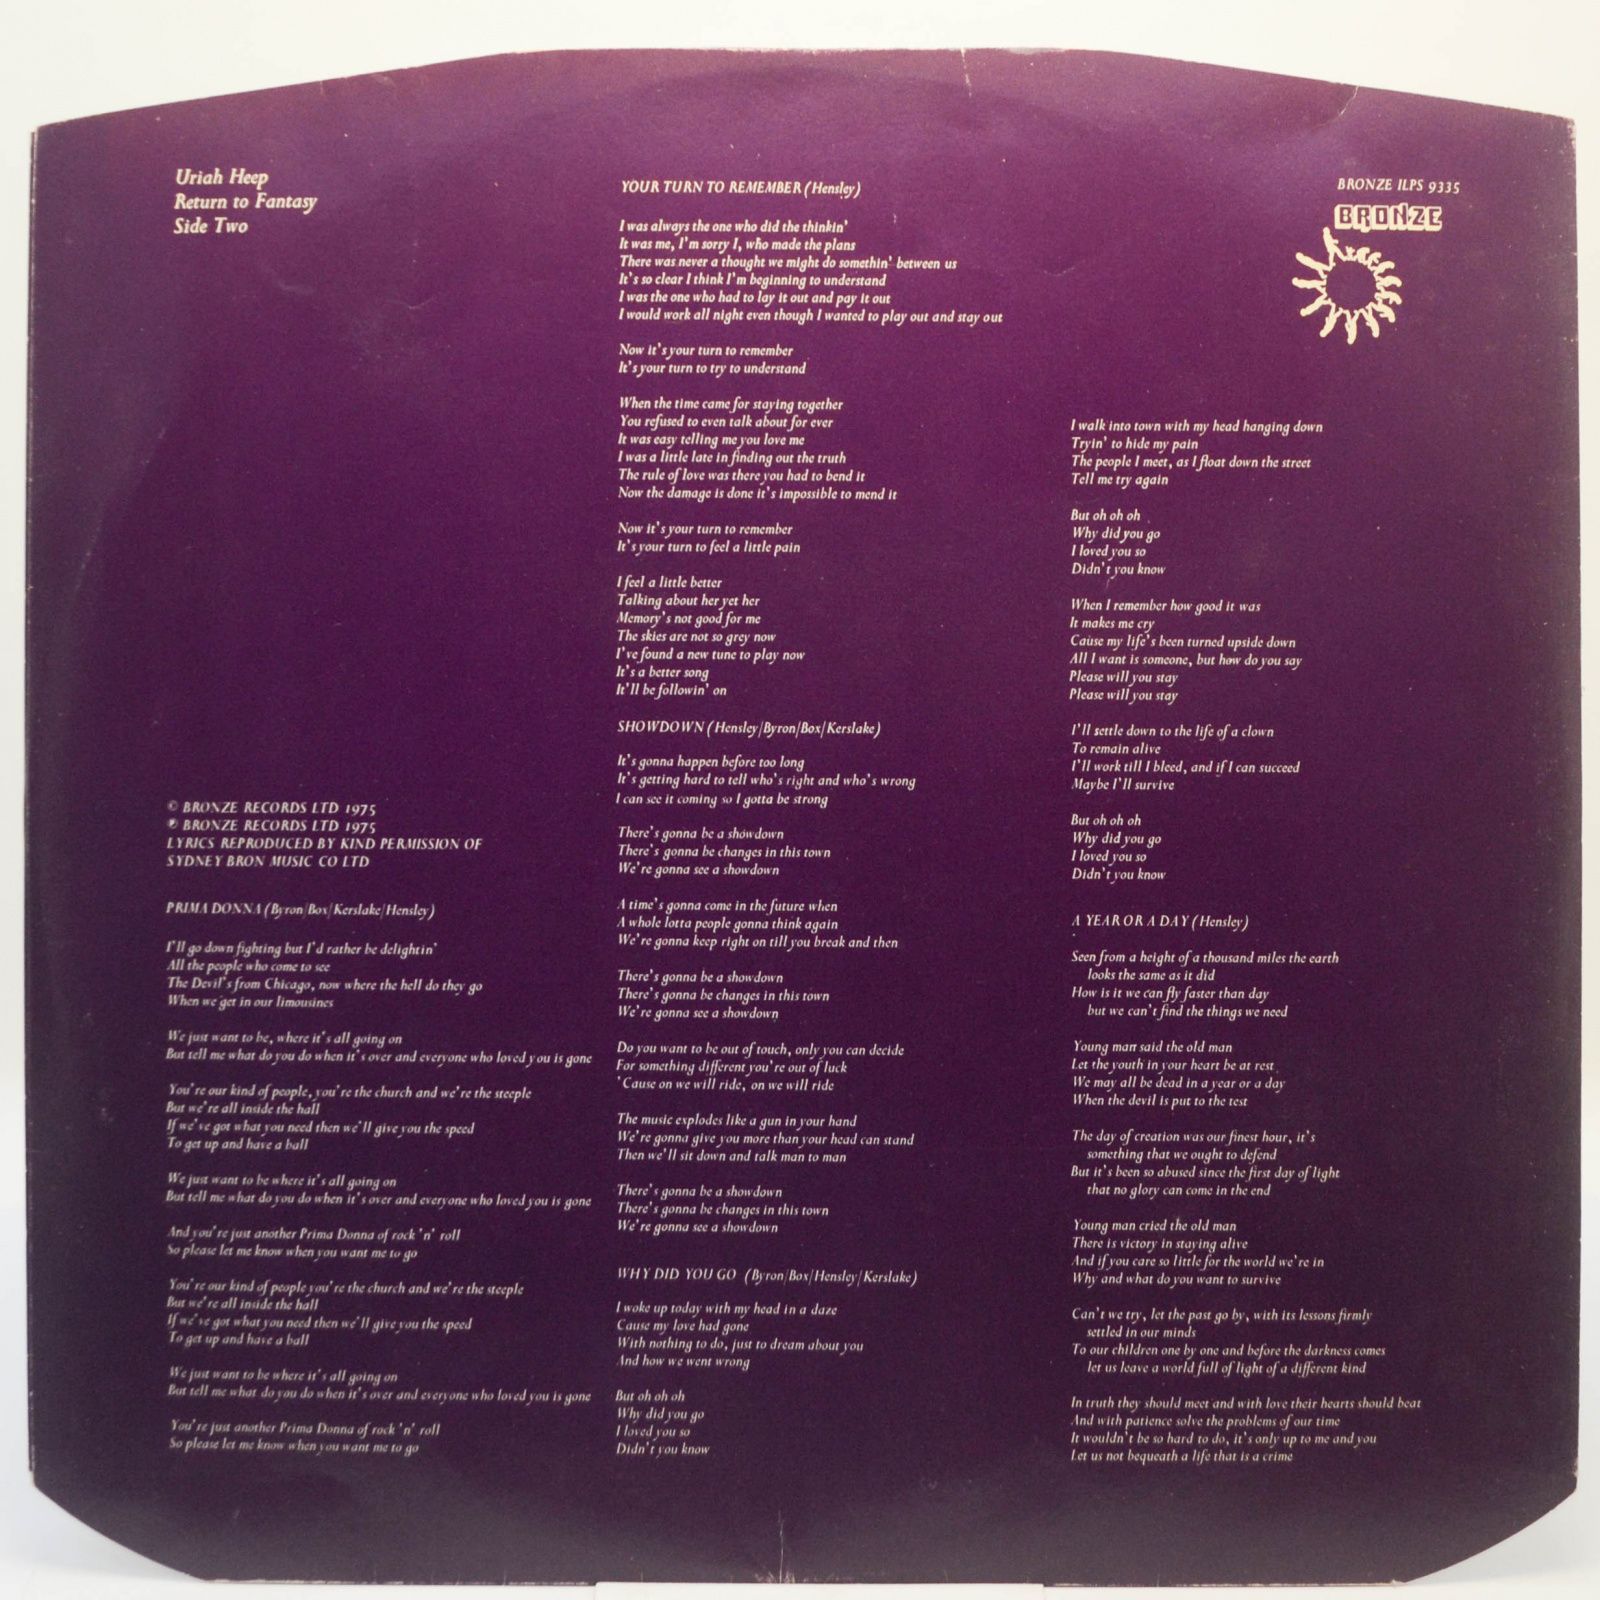 Uriah Heep — Return To Fantasy (1-st, UK), 1975